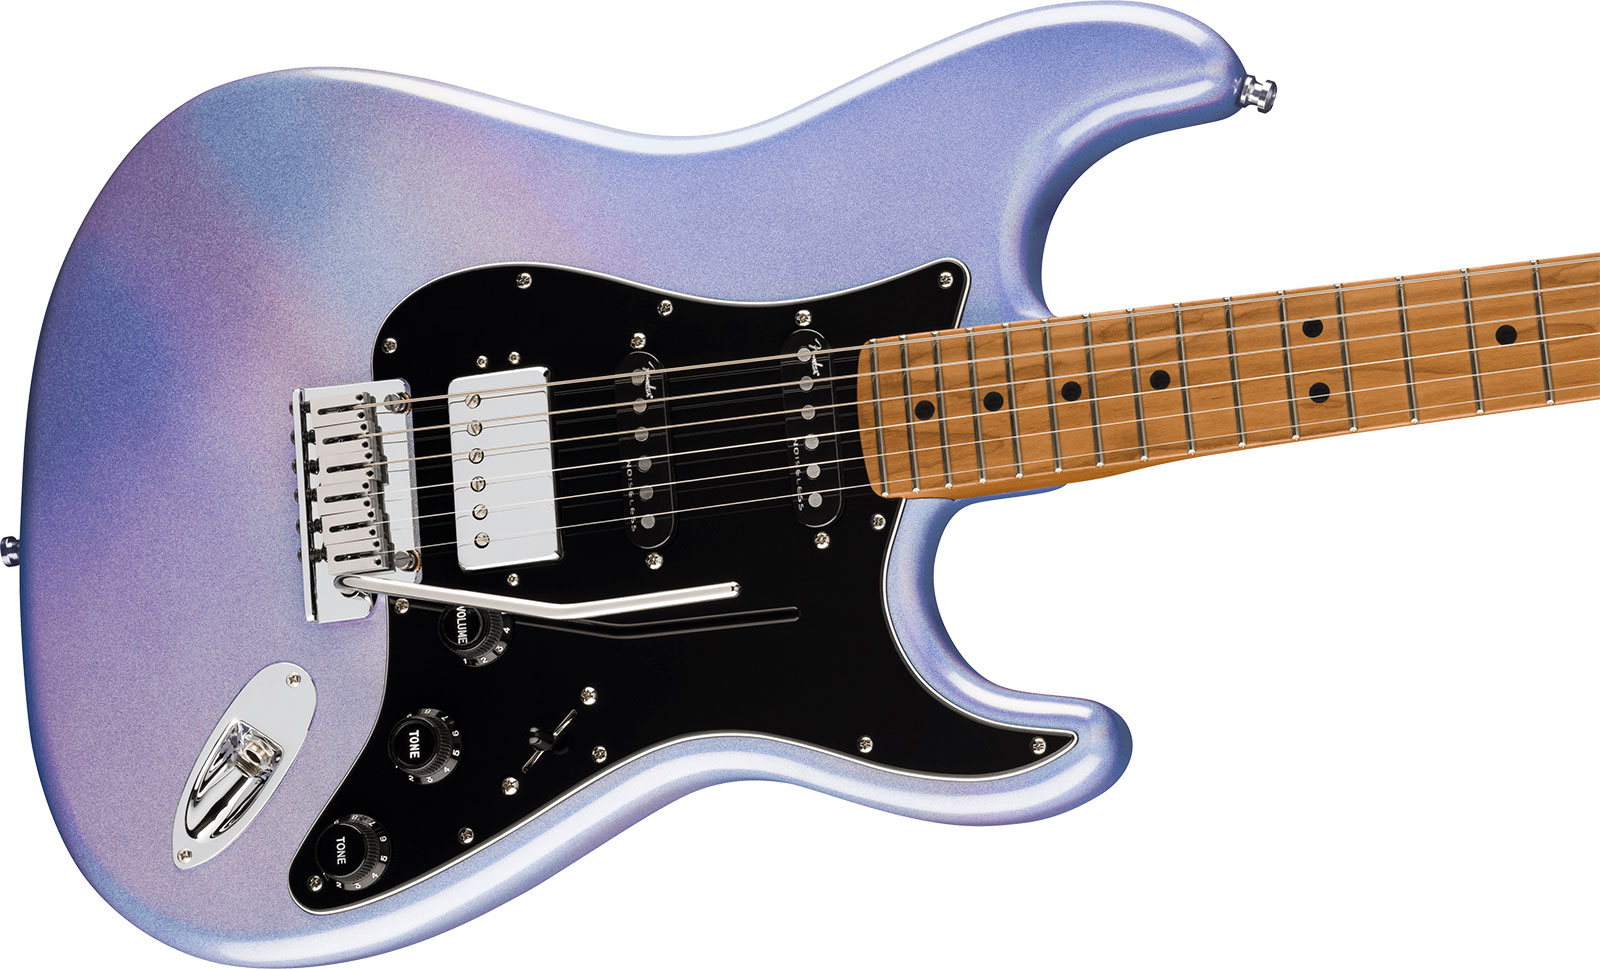 Fender Strat 70th Anniversary American Ultra Ltd Usa Hss Trem Mn - Amethyst - E-Gitarre in Str-Form - Variation 2